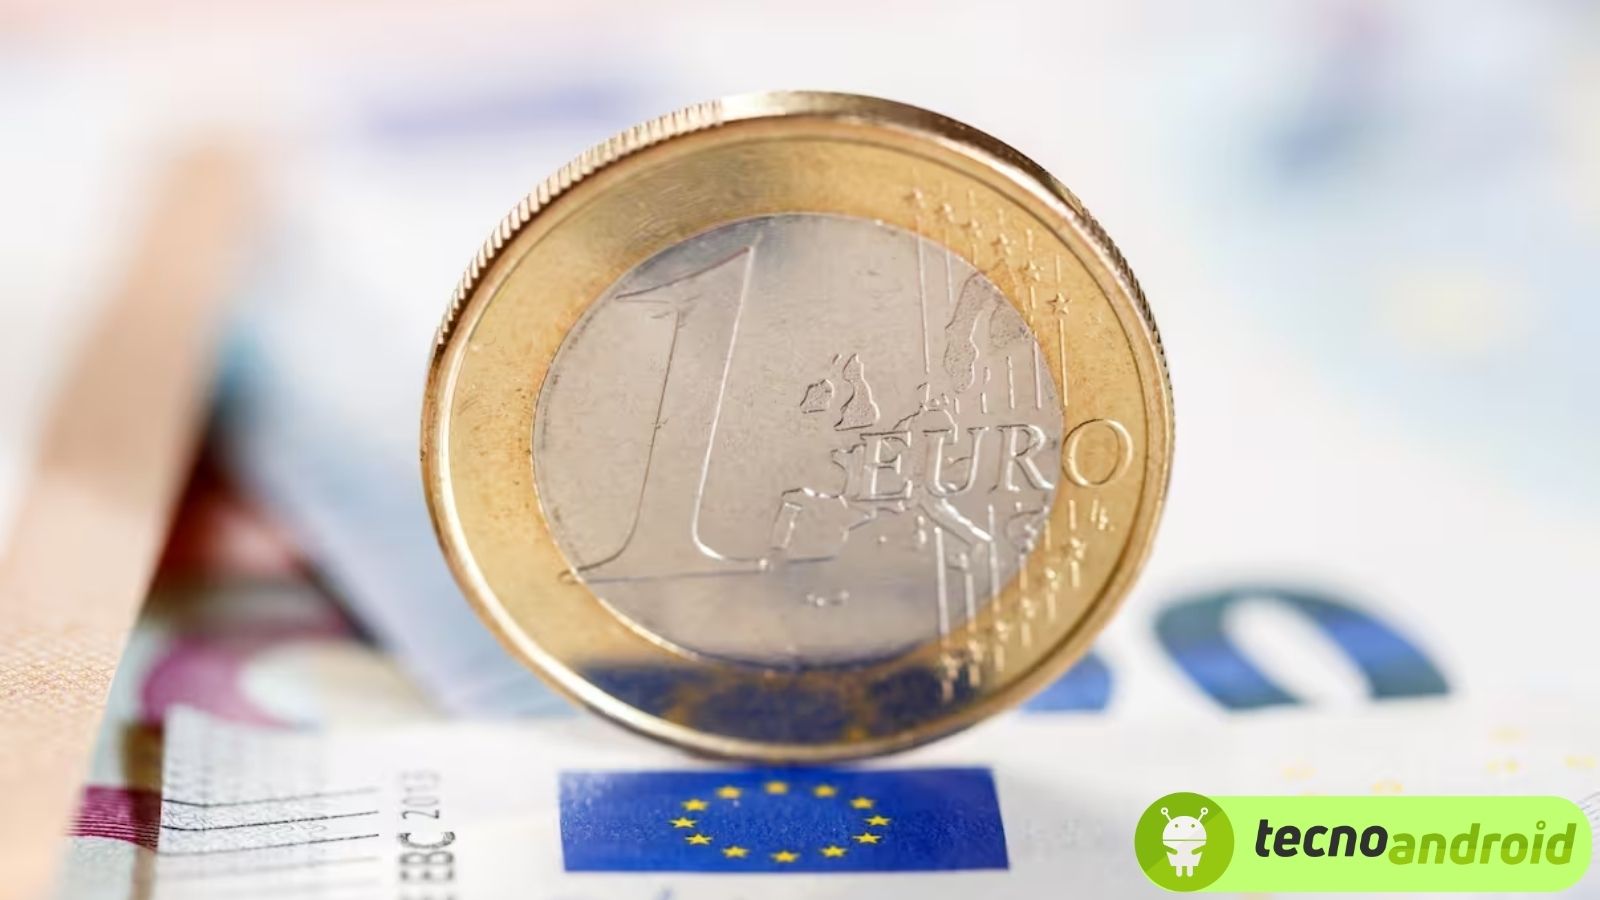 Monete da 1 euro: quali sono le più rare? Il valore vi sorprenderà